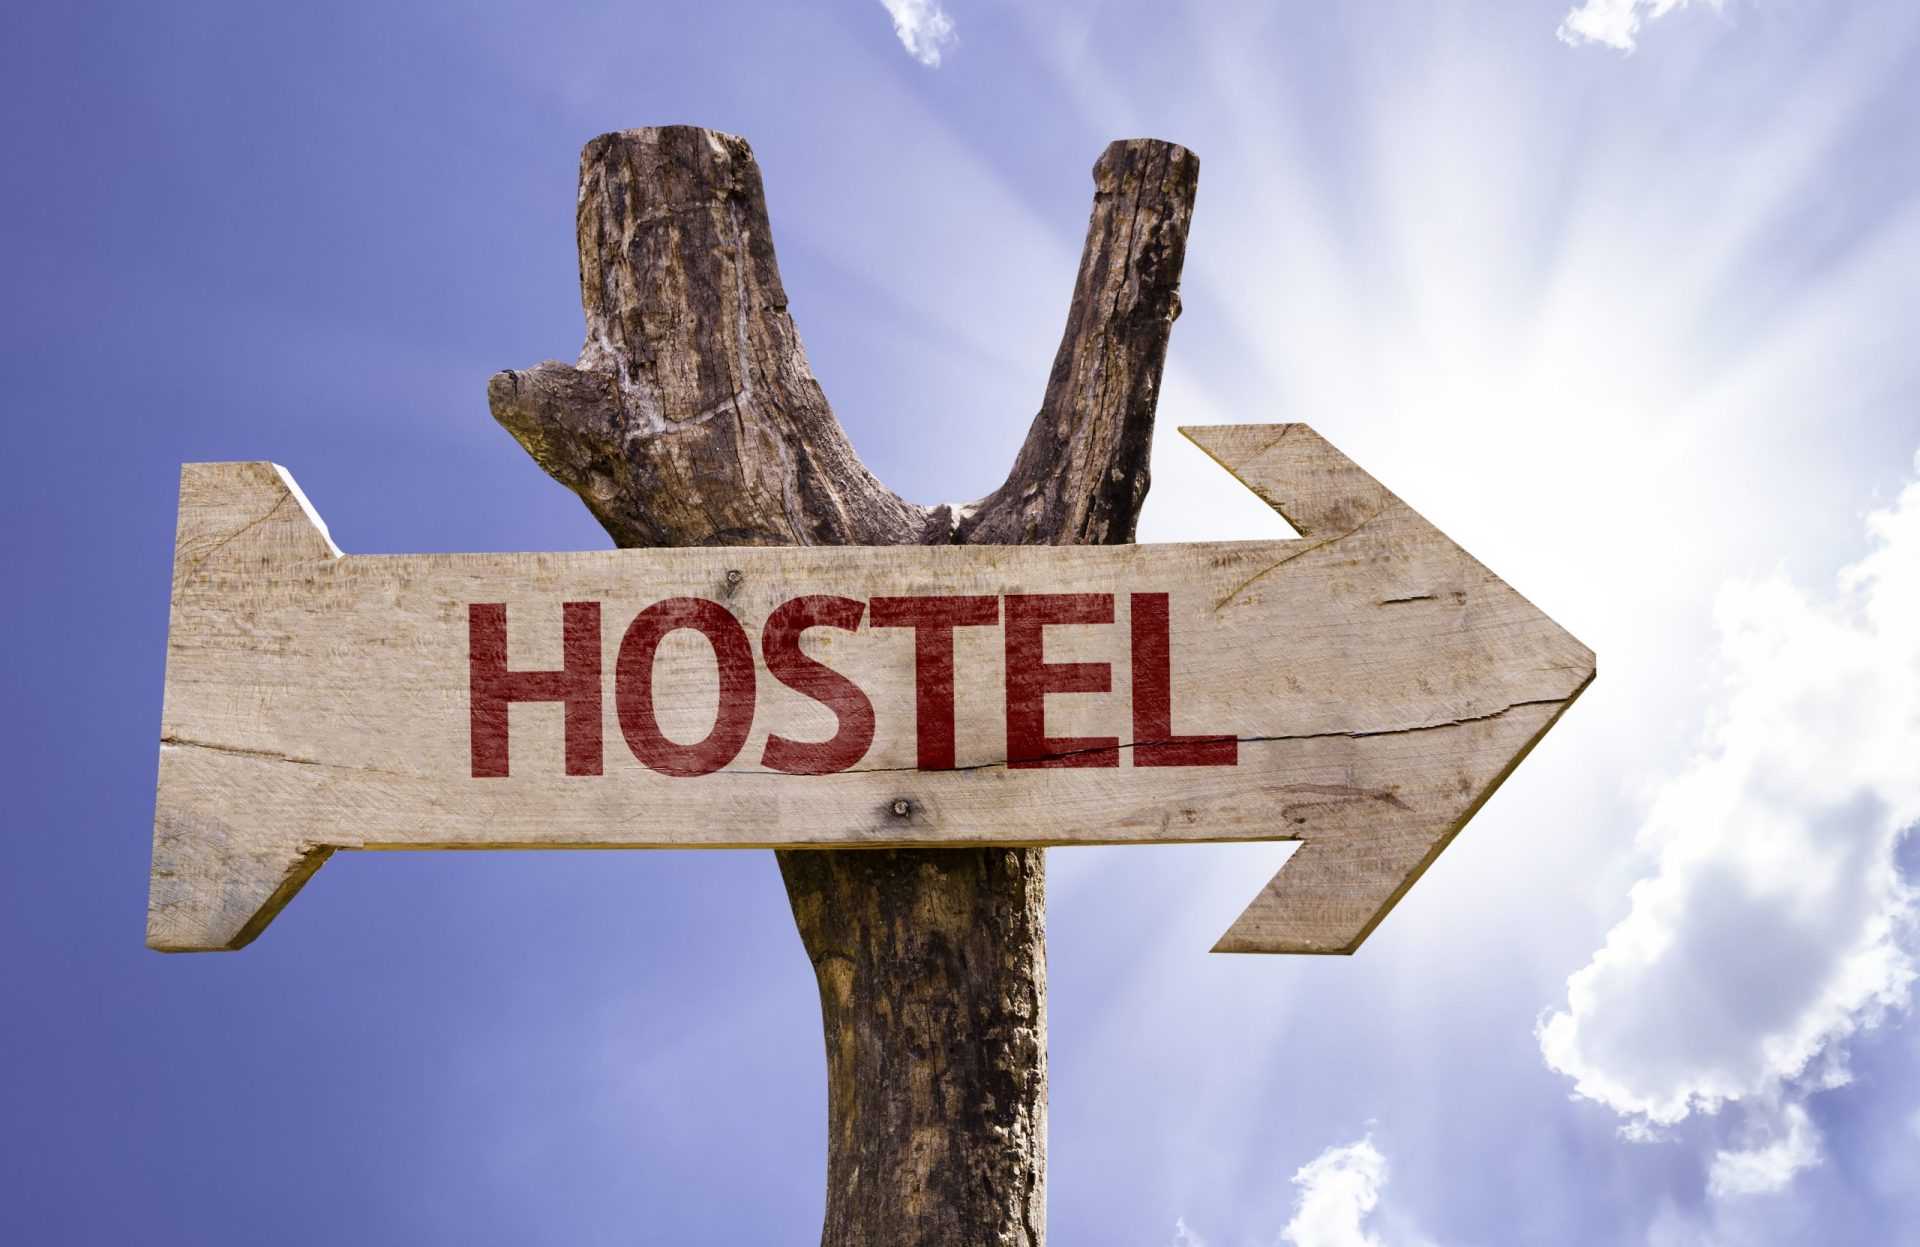 Sabe quantos hostels estão registados em Portugal?